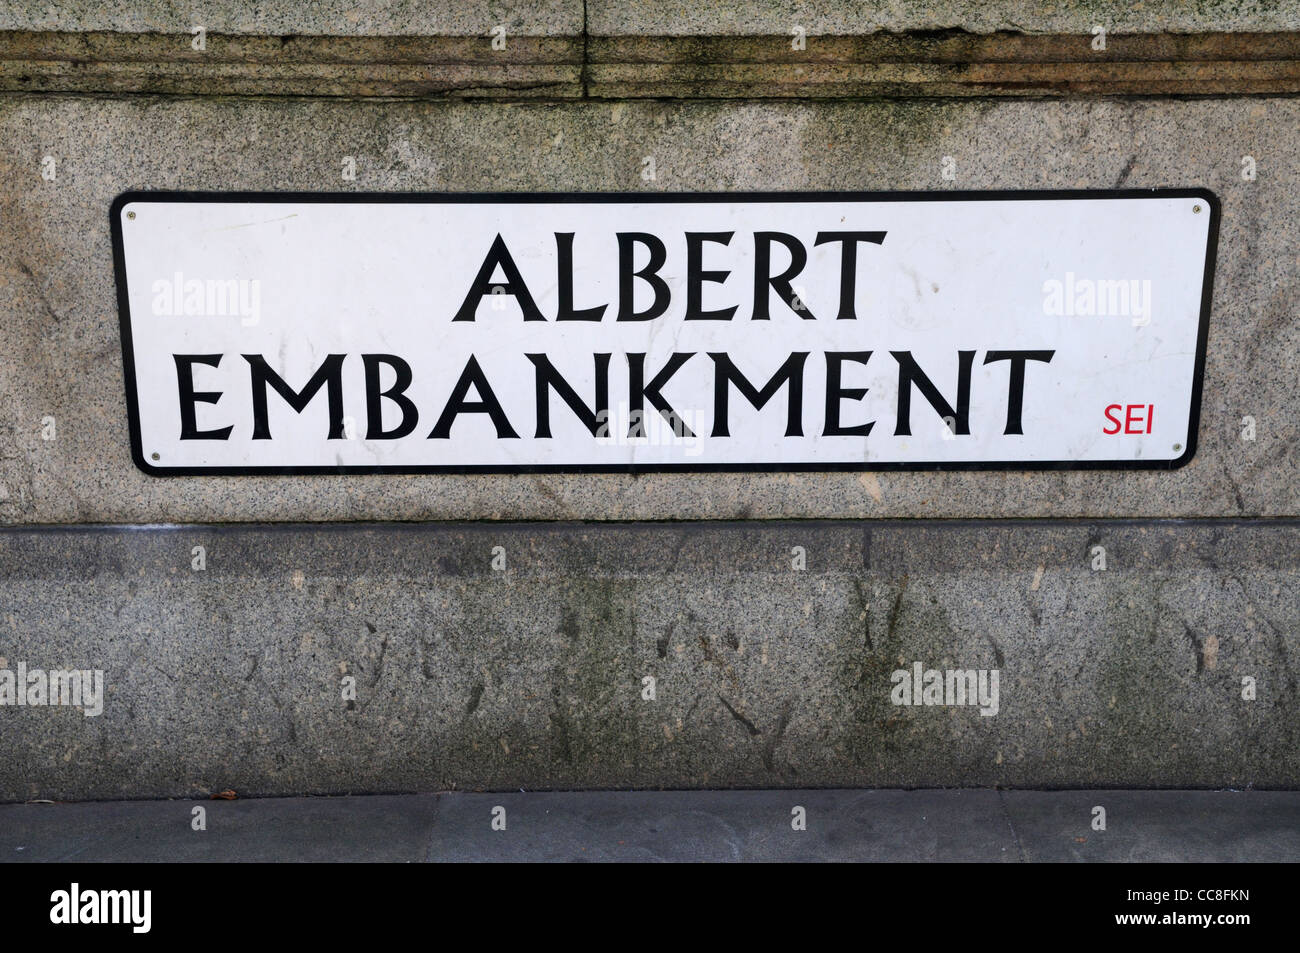 Albert Embankment strada segno, London, England, Regno Unito Foto Stock